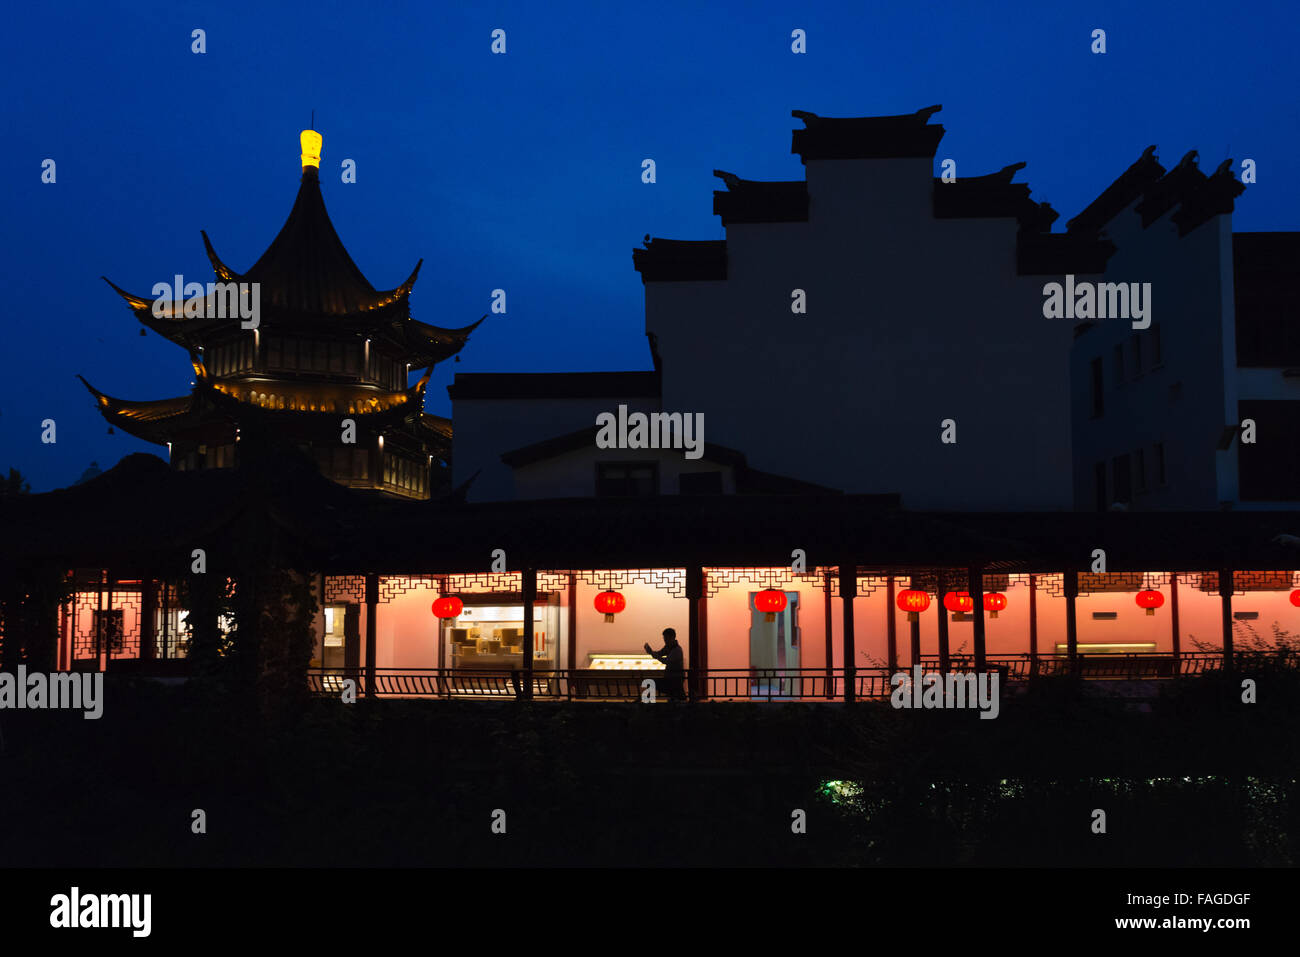 Vista notturna di case lungo il fiume Qinhuai, Nanjing, provincia dello Jiangsu, Cina Foto Stock